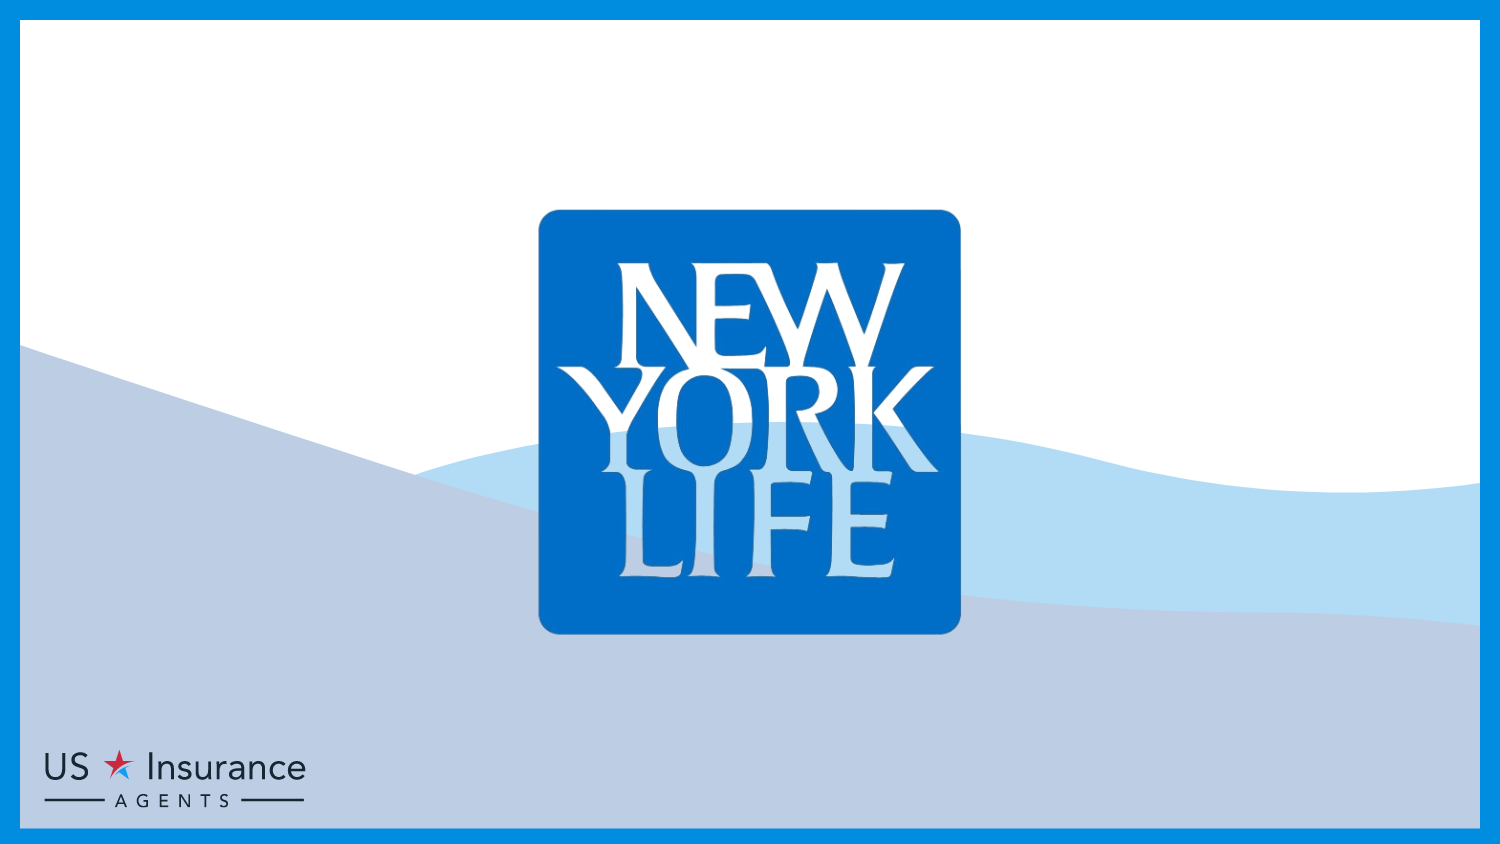 New York Life: Best Life Insurance for Nurses